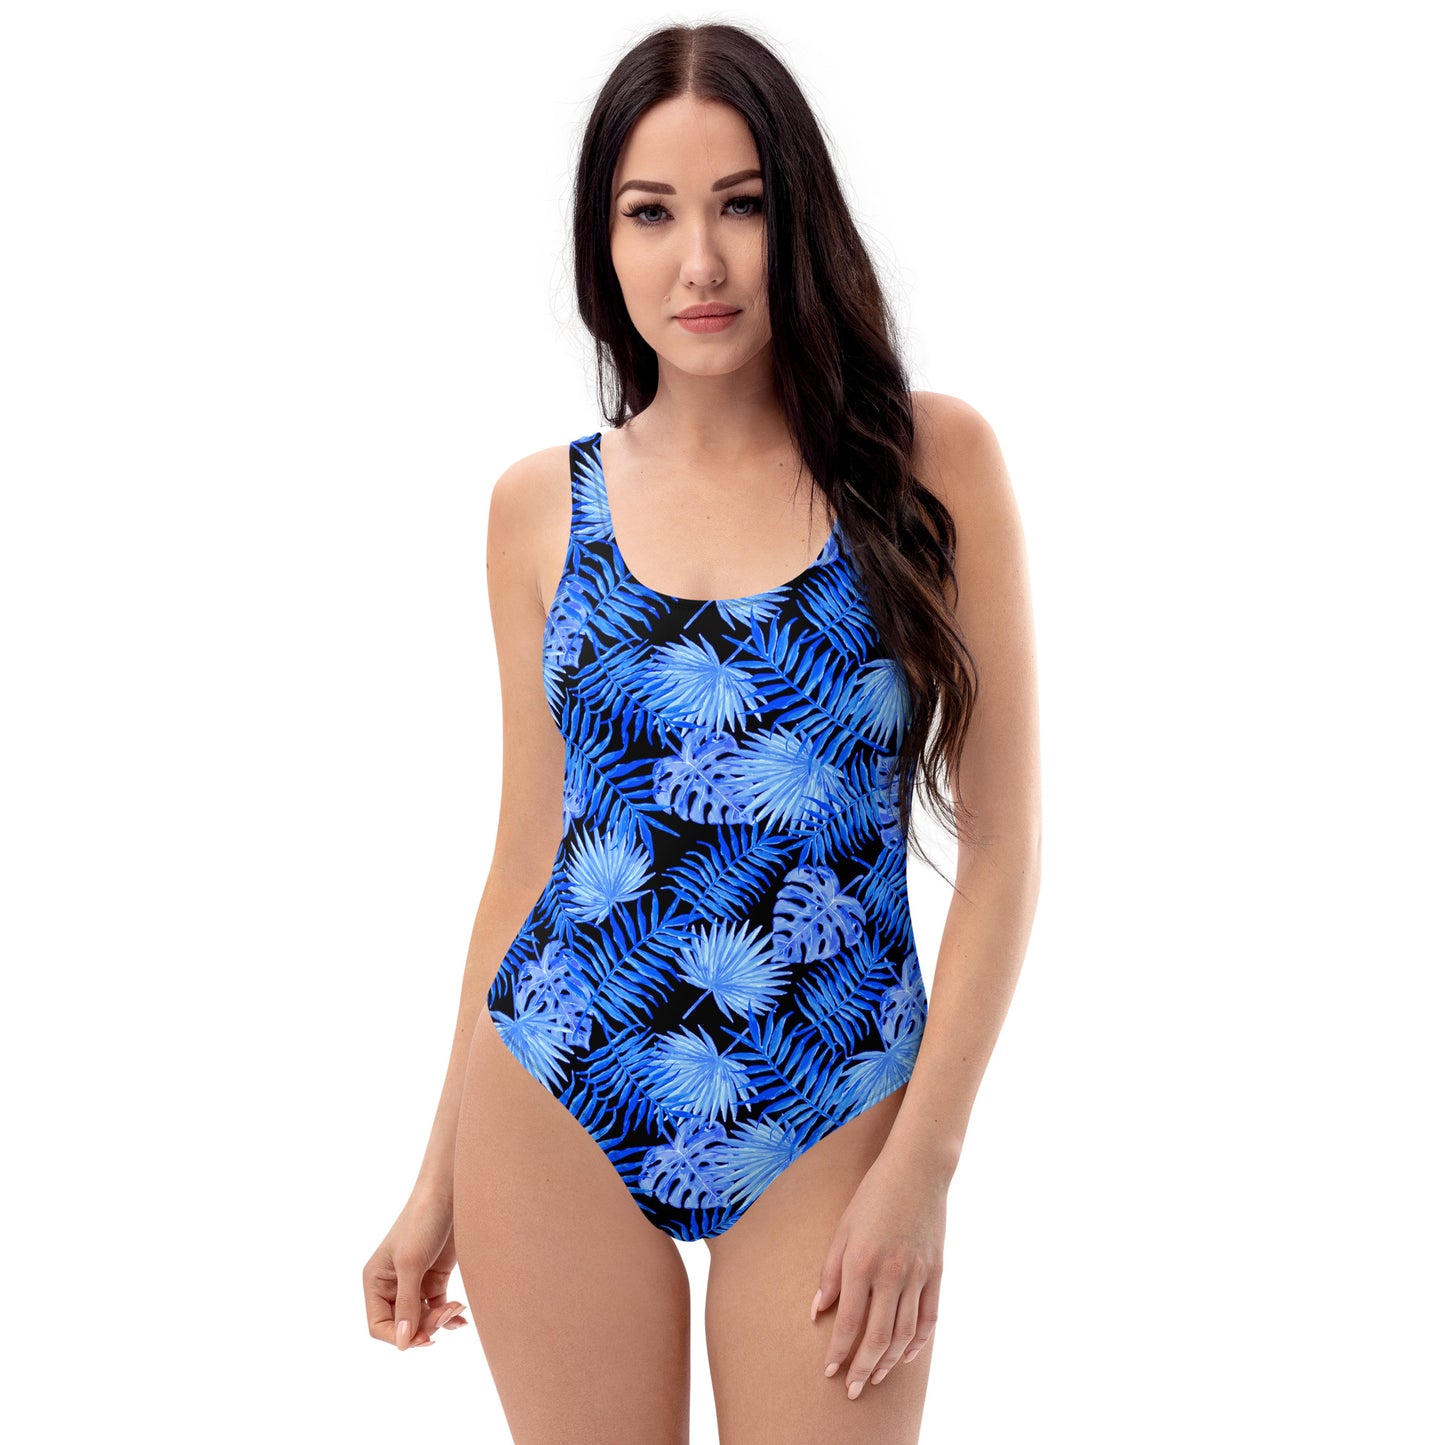 Snooty Fox Art One-Piece Swimsuit - Blue Palm Pattern